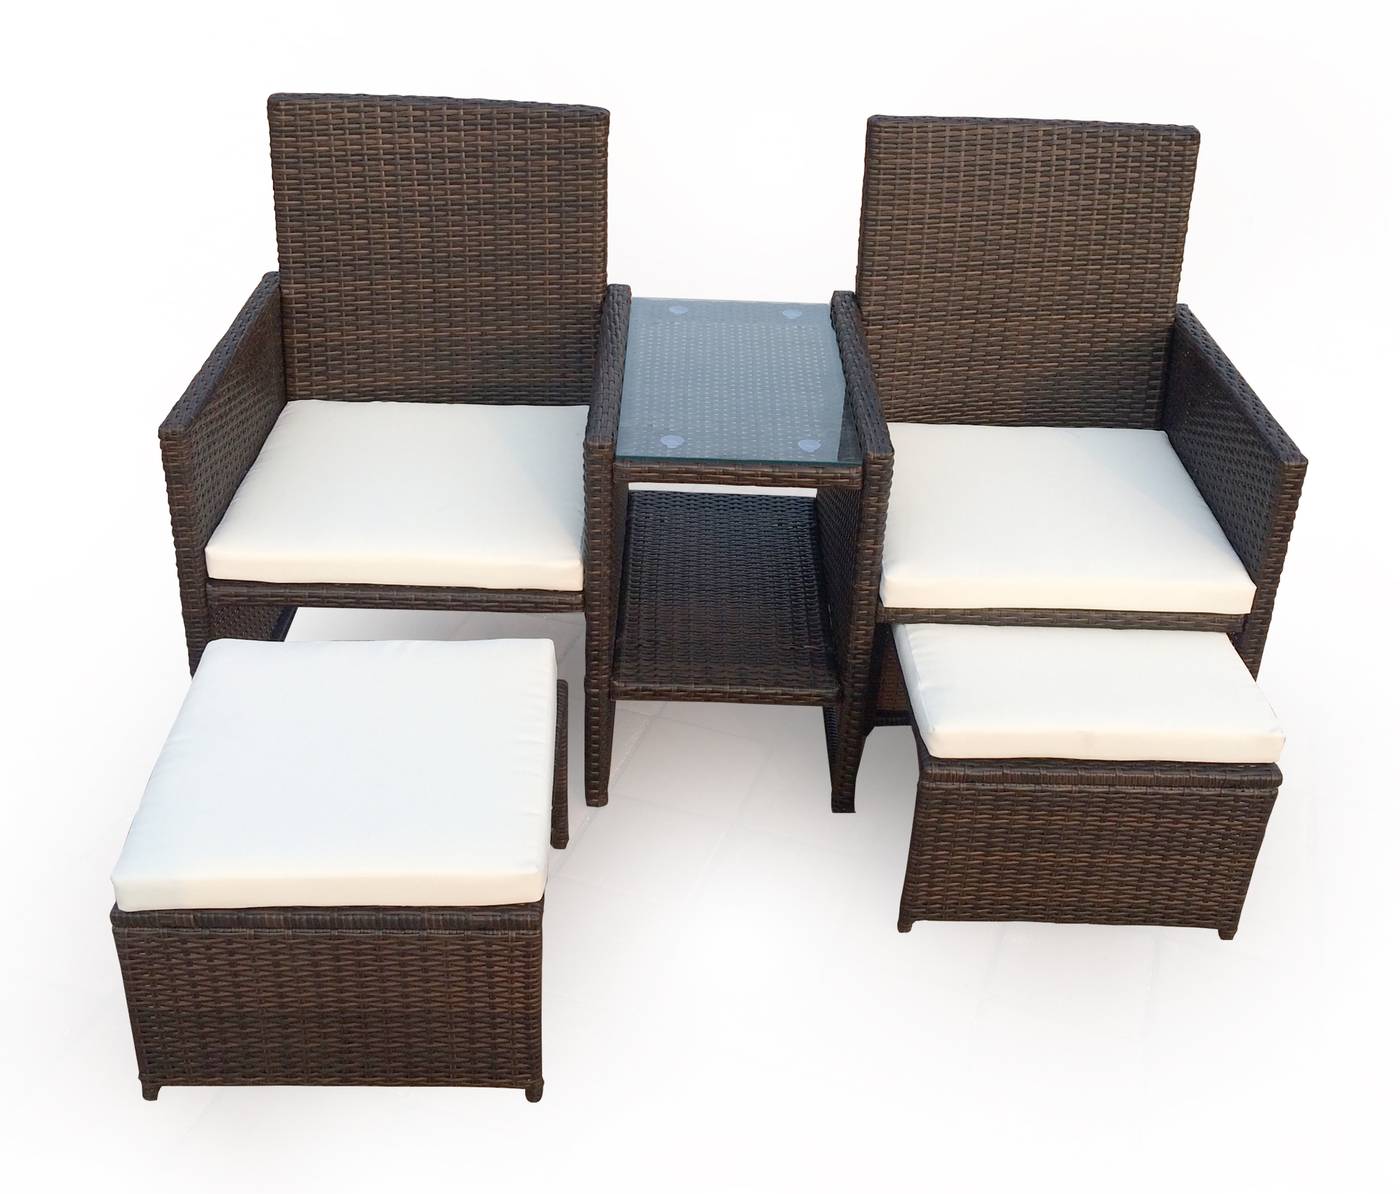 Conjunto de ratán sintético: 2 sillones multiposiciones con mesa centro ligada y 2 taburetes ocultables bajo sillón